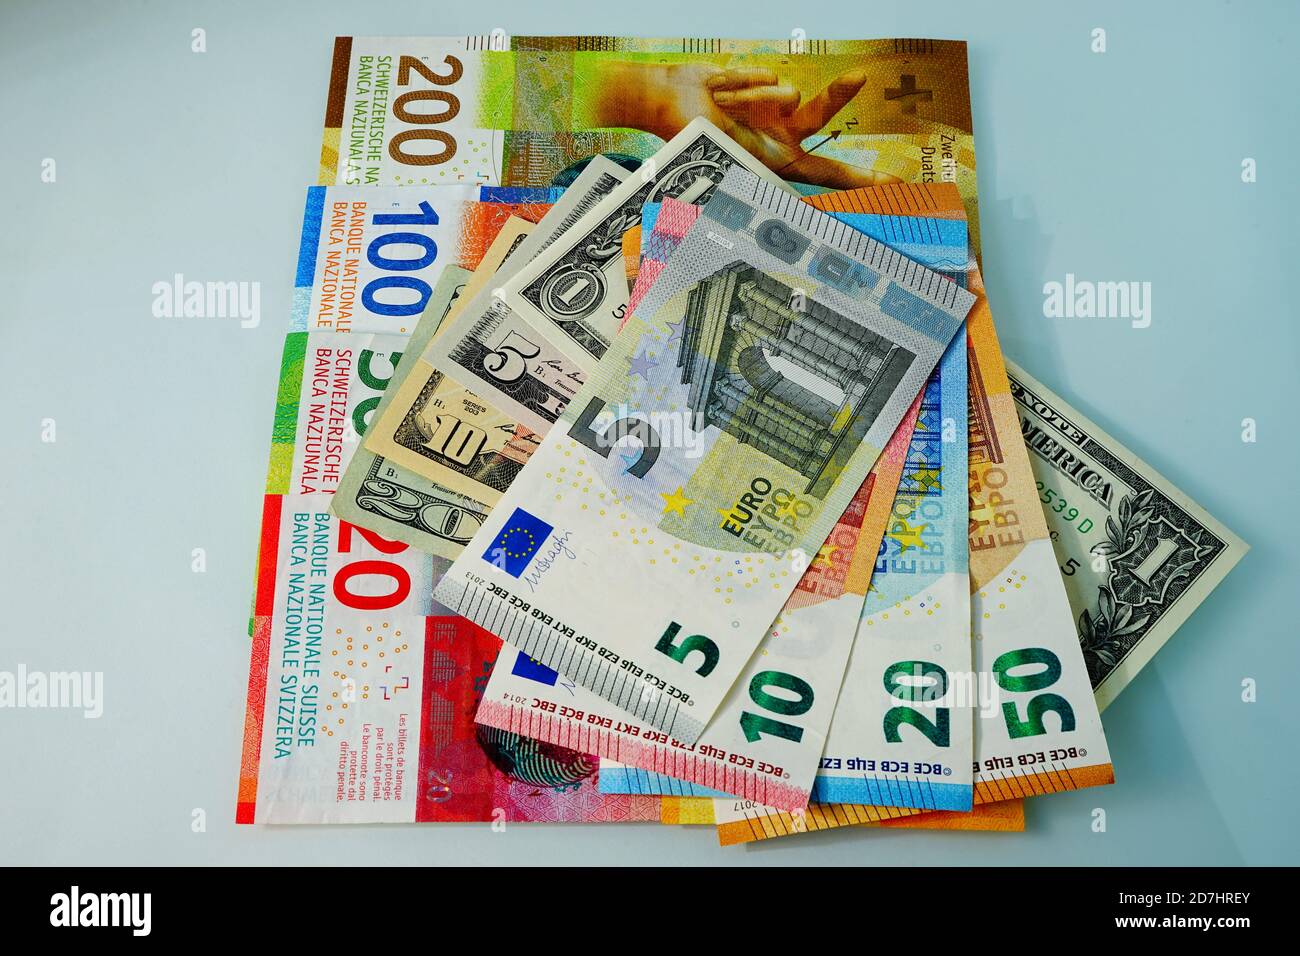 Geld - verschiedene Währungen - Geld aus den USA, der EU und der Schweiz. Money - Different currency - money from USA, EU and Switzerland - USD, EURO, Stock Photo